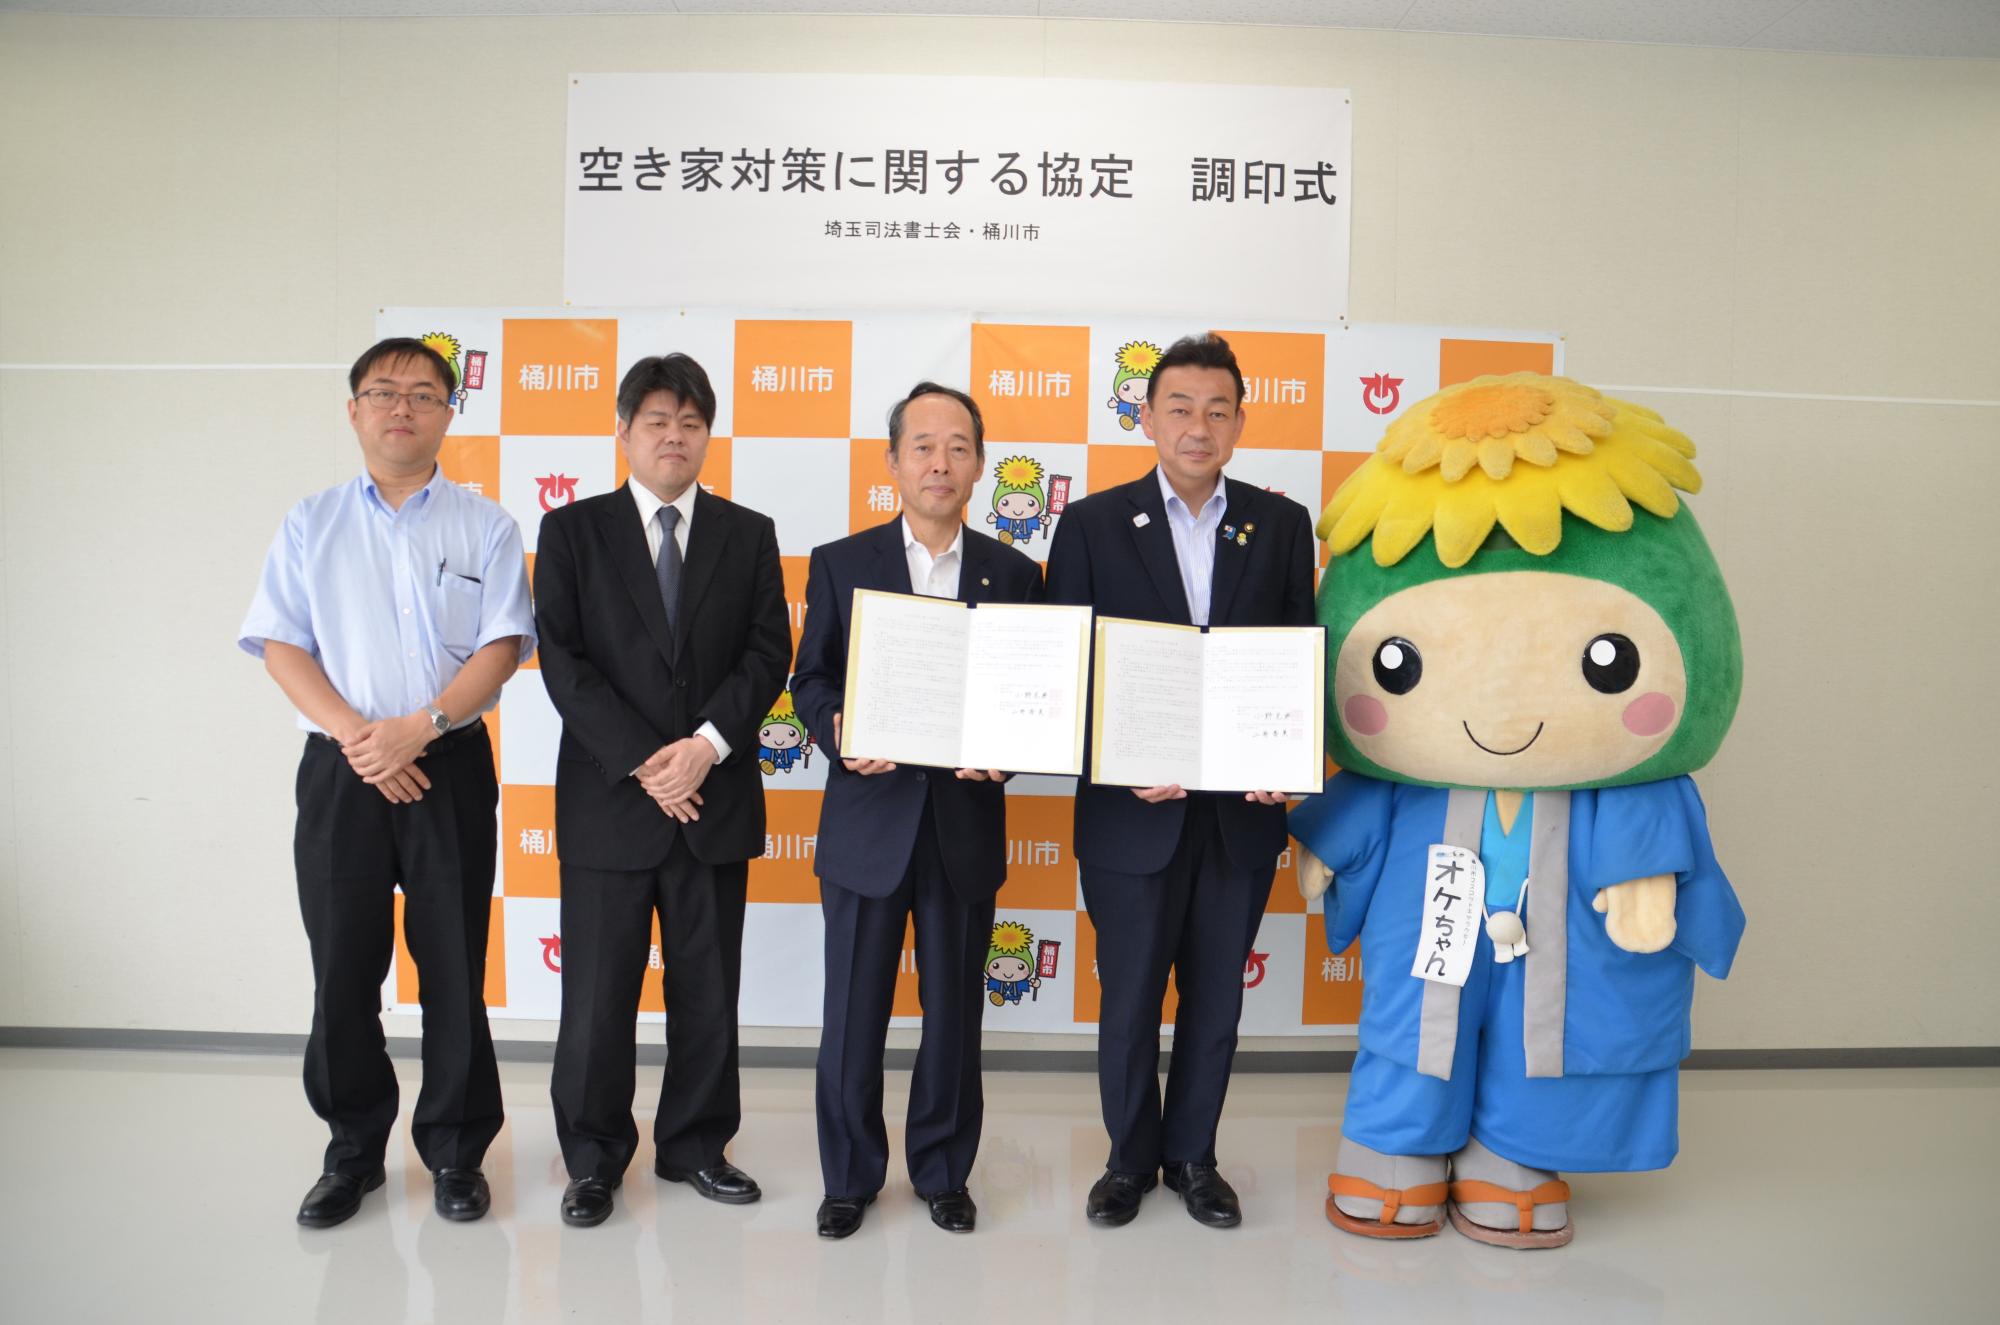 空き家対策に関する協定」締結式の集合写真。左から埼玉司法書士会の3人の方々、小野桶川市長、オケちゃん。